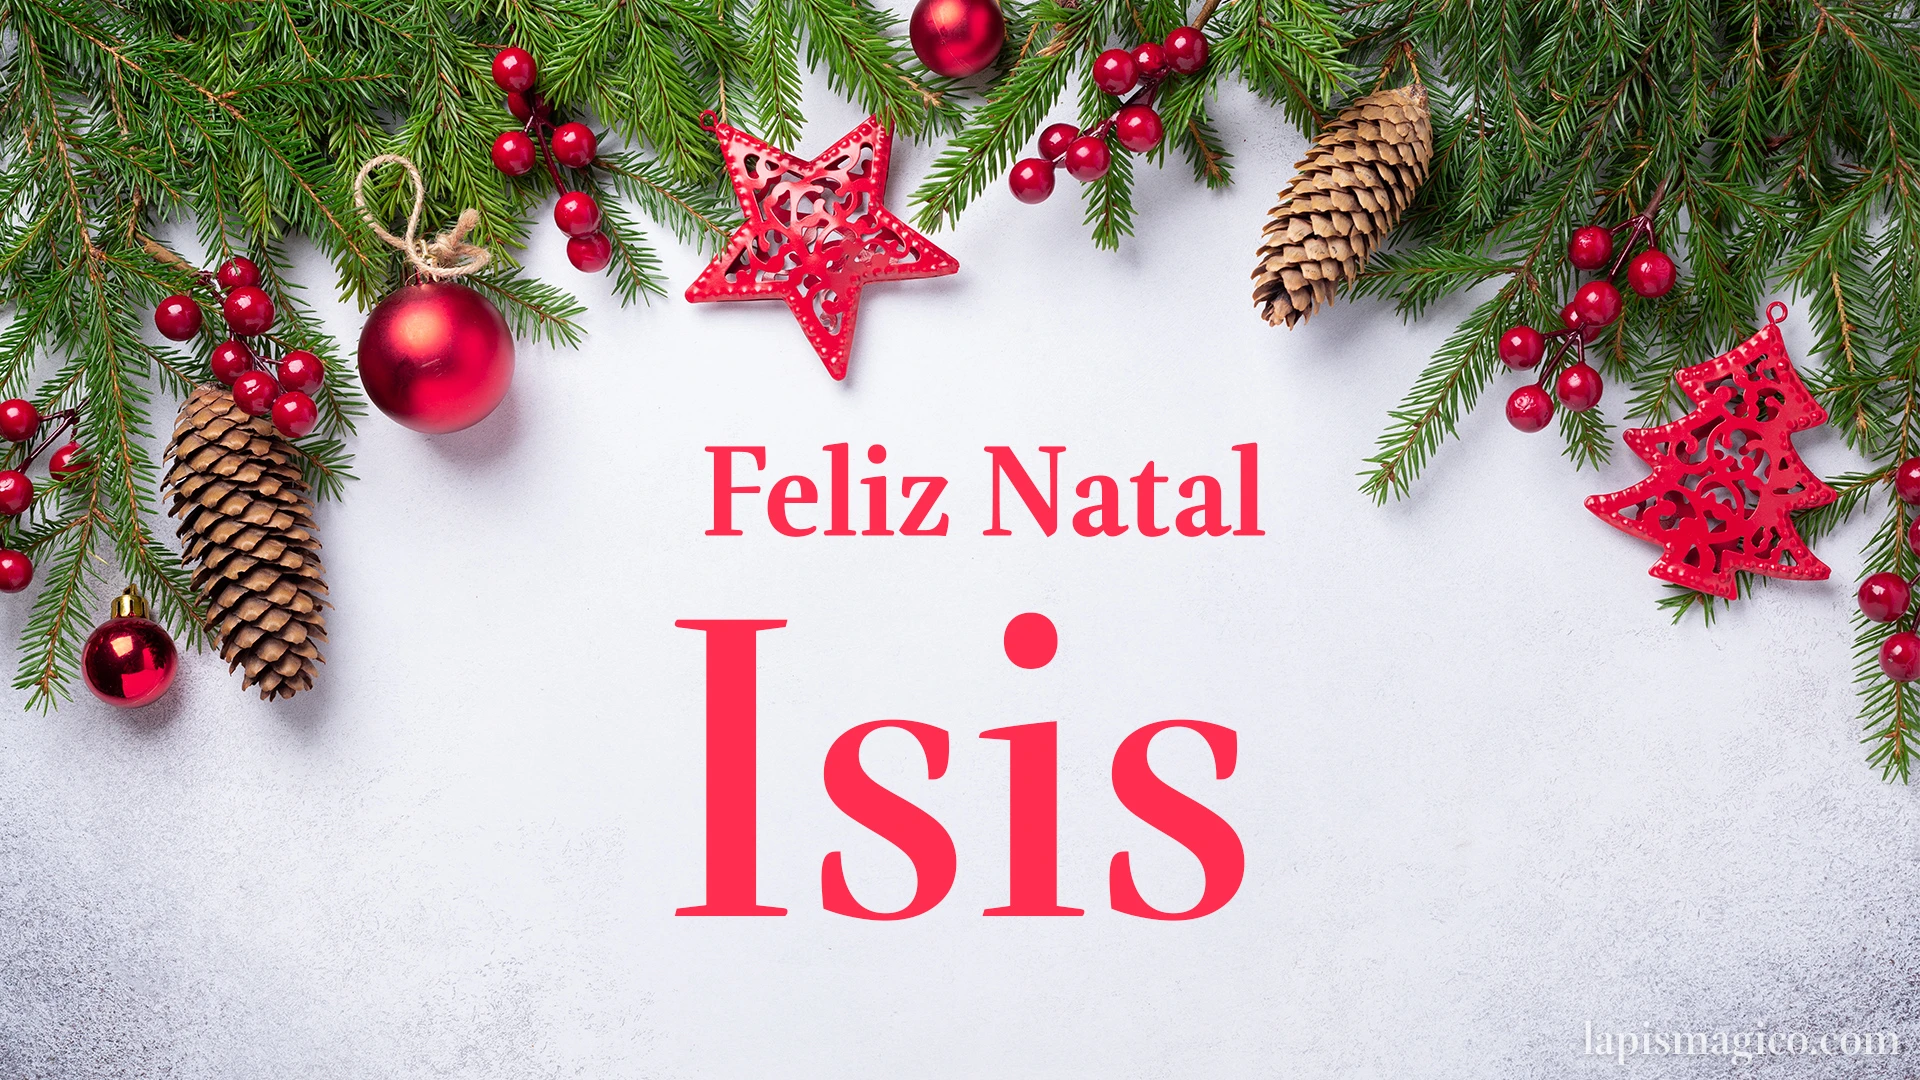 Oh Isis, cinco postais de Feliz Natal Postal com o teu nome